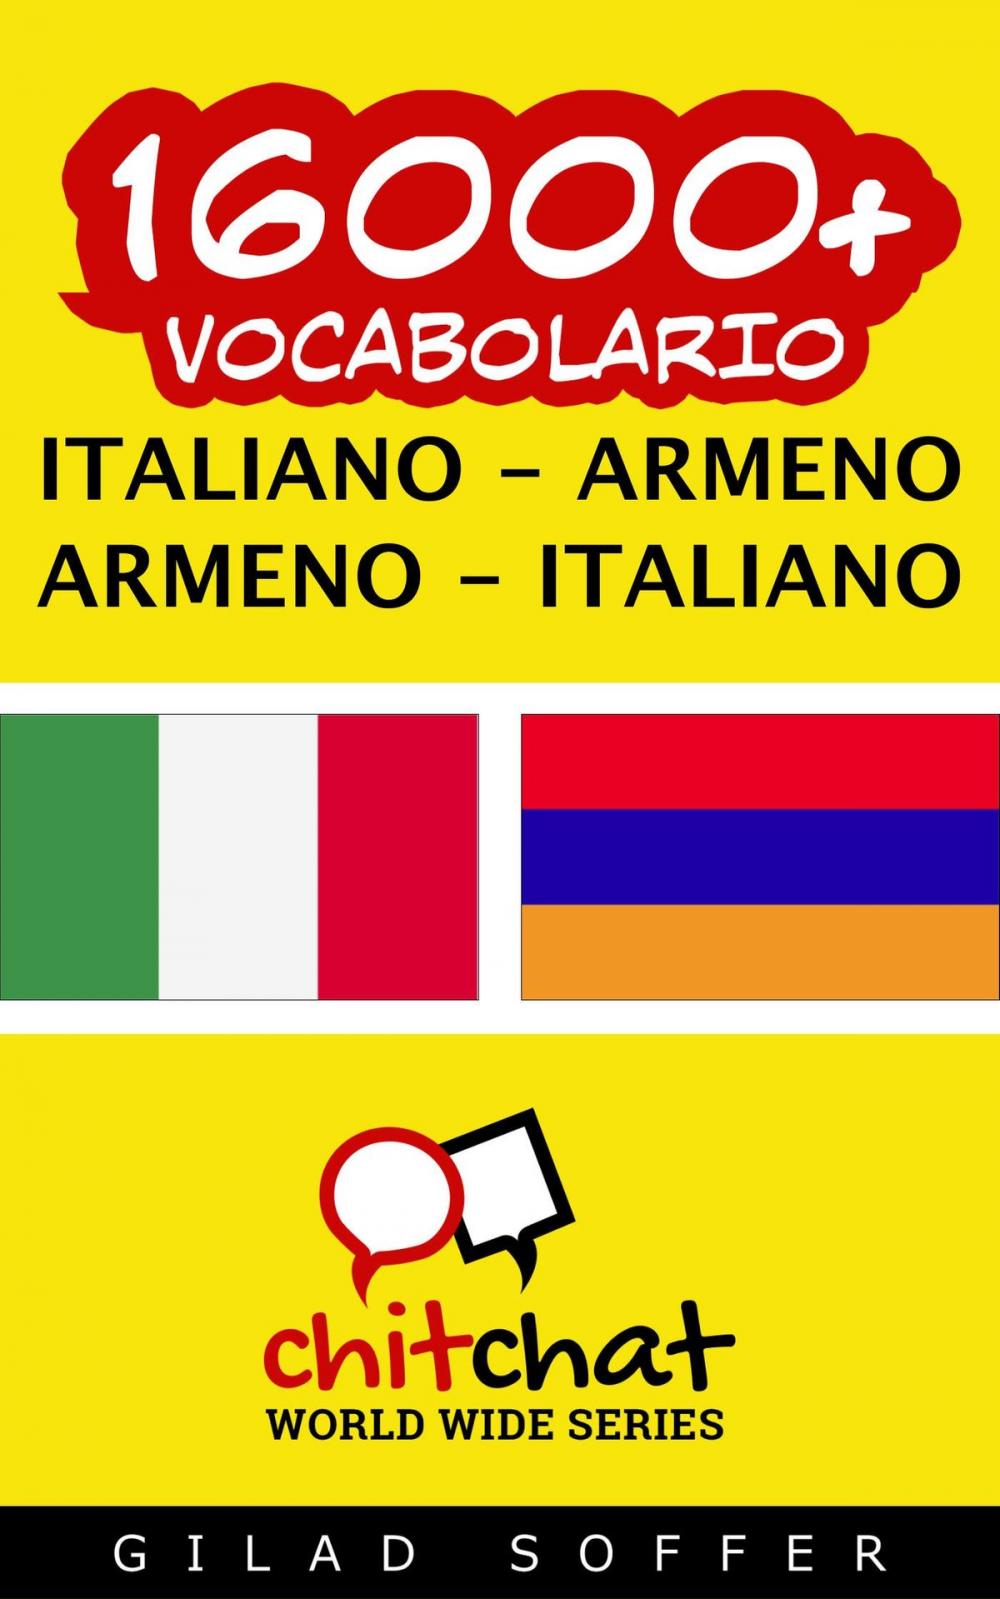 Big bigCover of 16000+ vocabolario Italiano - Armeno